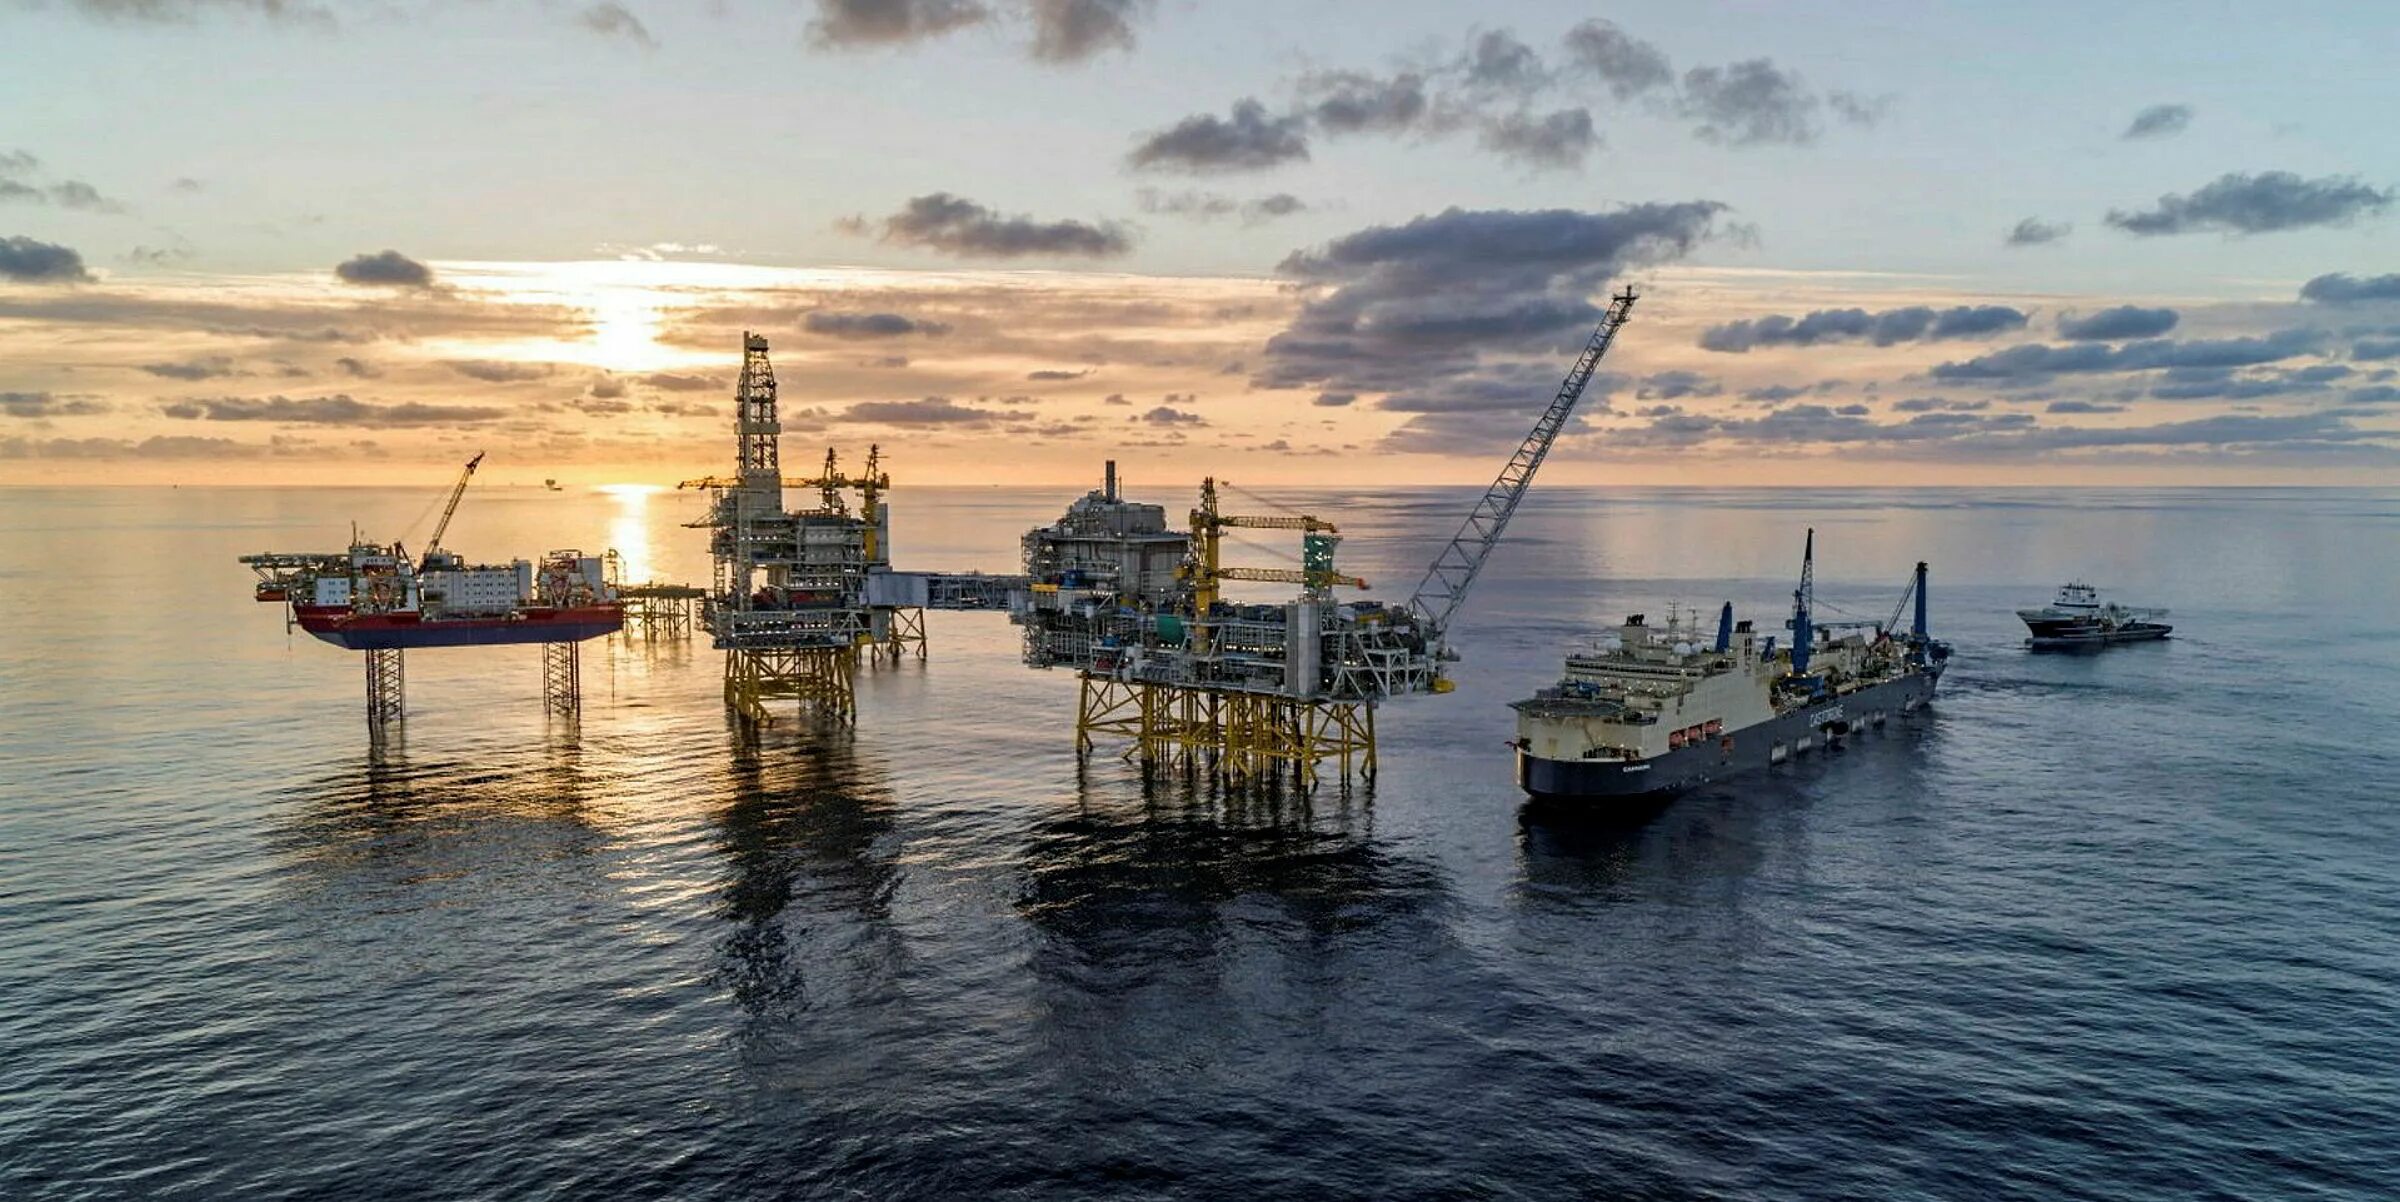 Saipem castorone. Johan Sverdrup месторождение. Нефтедобыча в Северном море. Нефть на шельфе Северного моря.